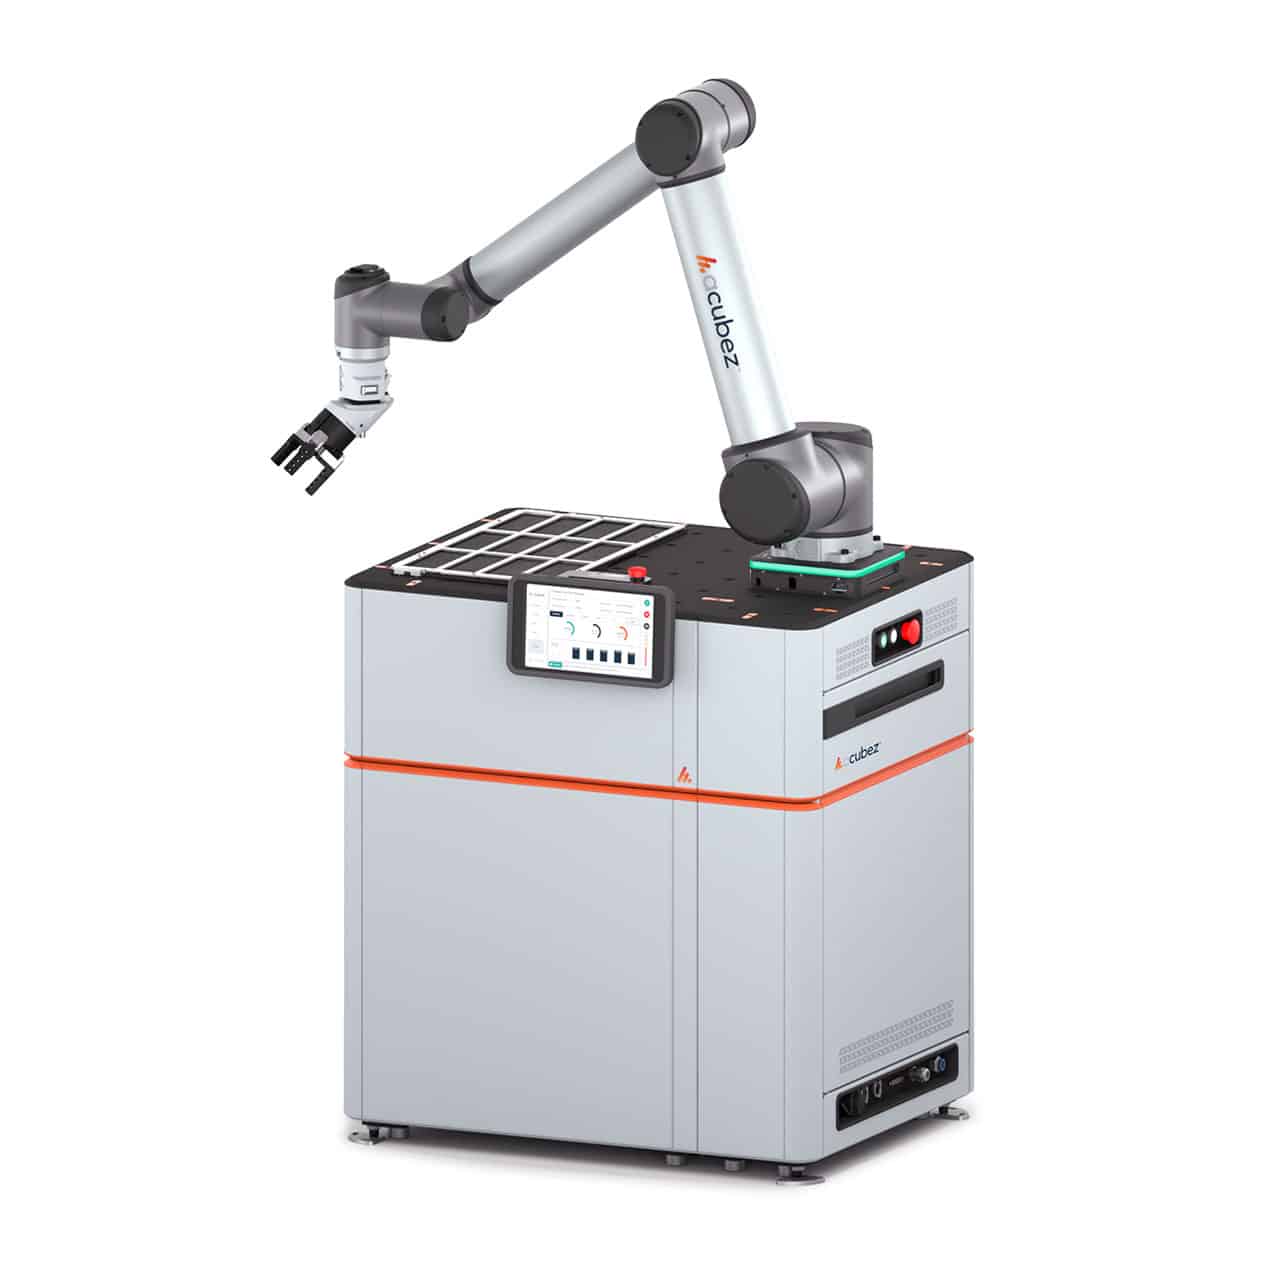 Robotic machine tending solution - automate CNC Lathe